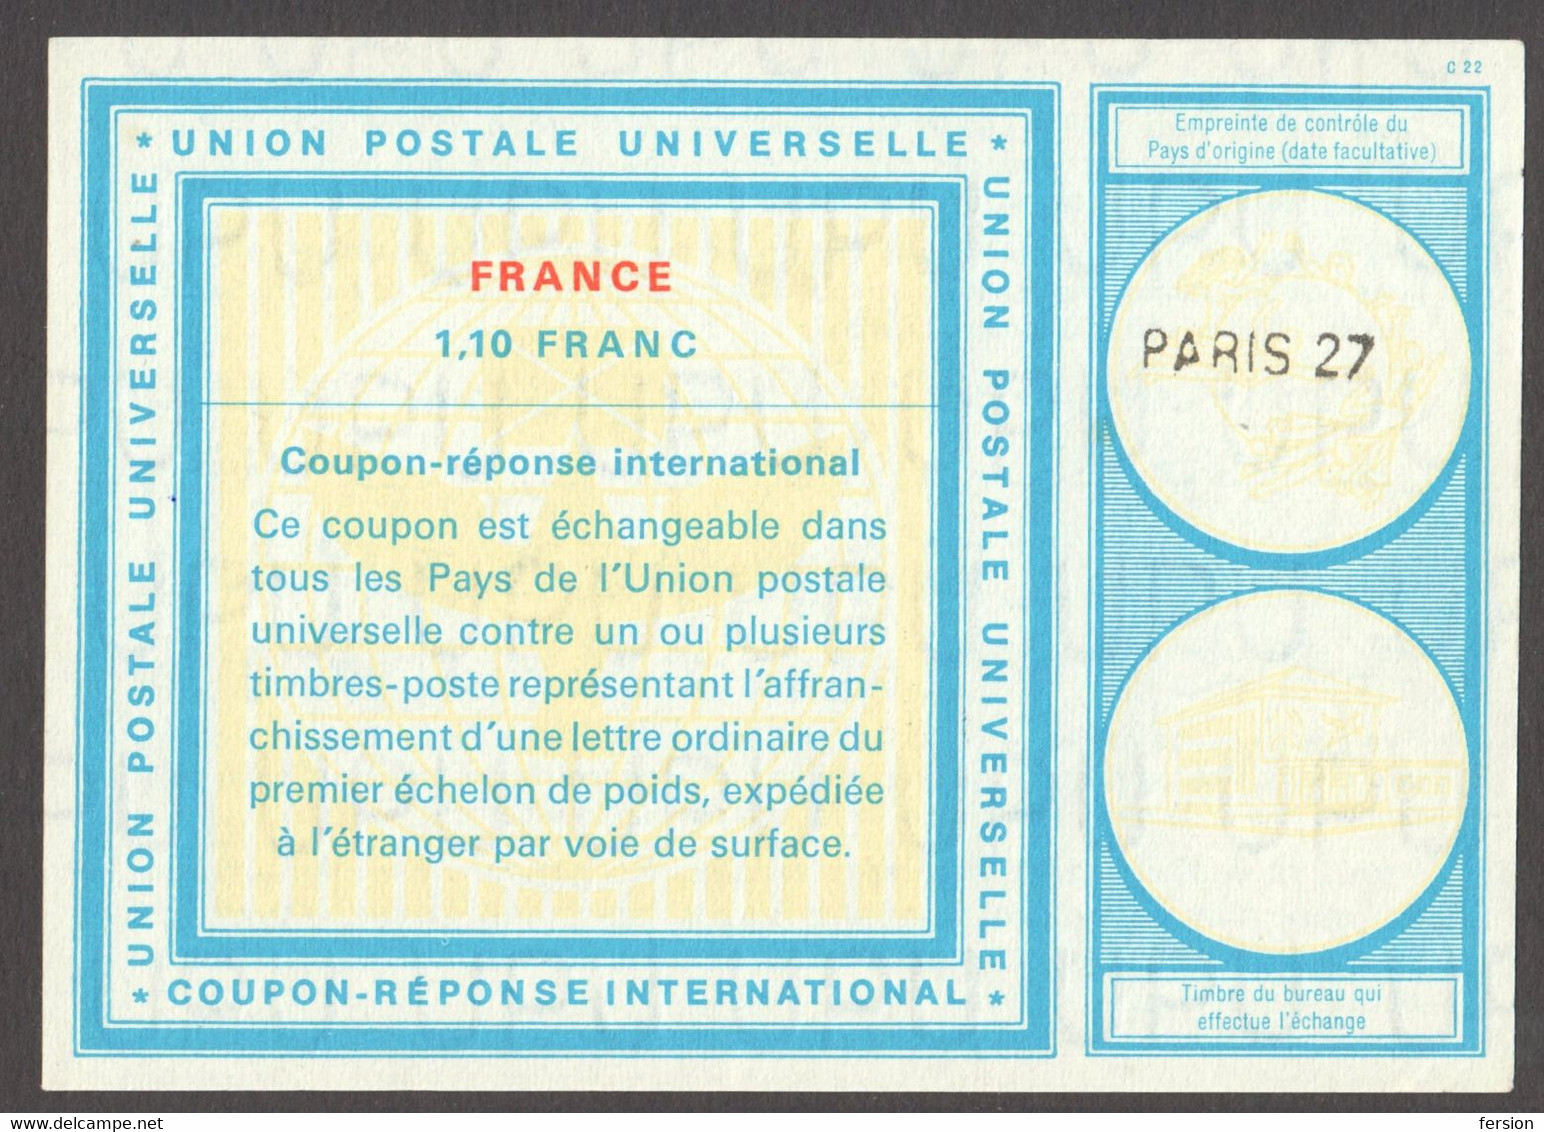 1970's FRANCE UPU Coupon Résponse International C22 Reply Coupon REPONSE - PARIS 27 Model Vienna WIEN - Coupons-réponse